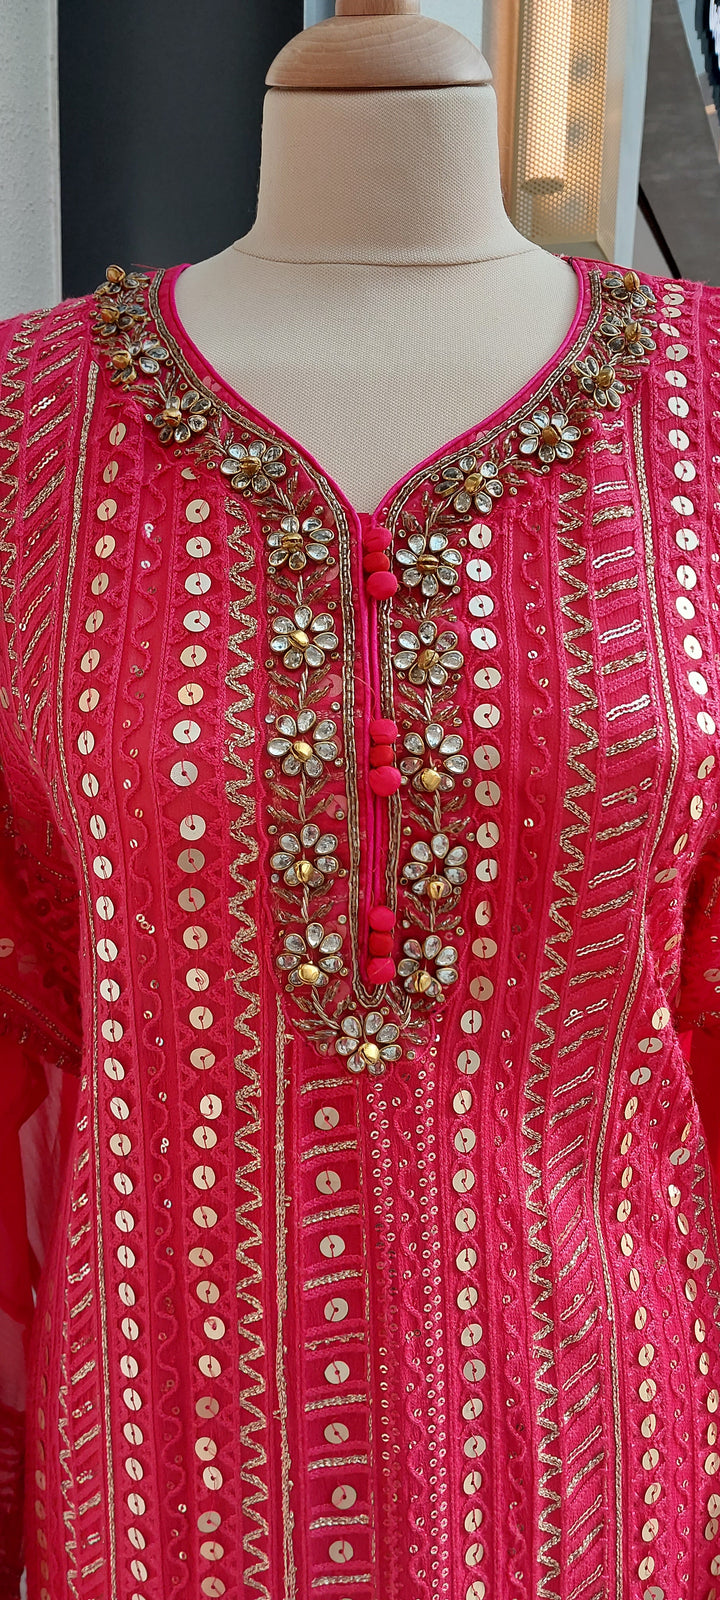 Navya Rani Pink Georgette Kurta and Lehenga Set (Semi-Stitched)